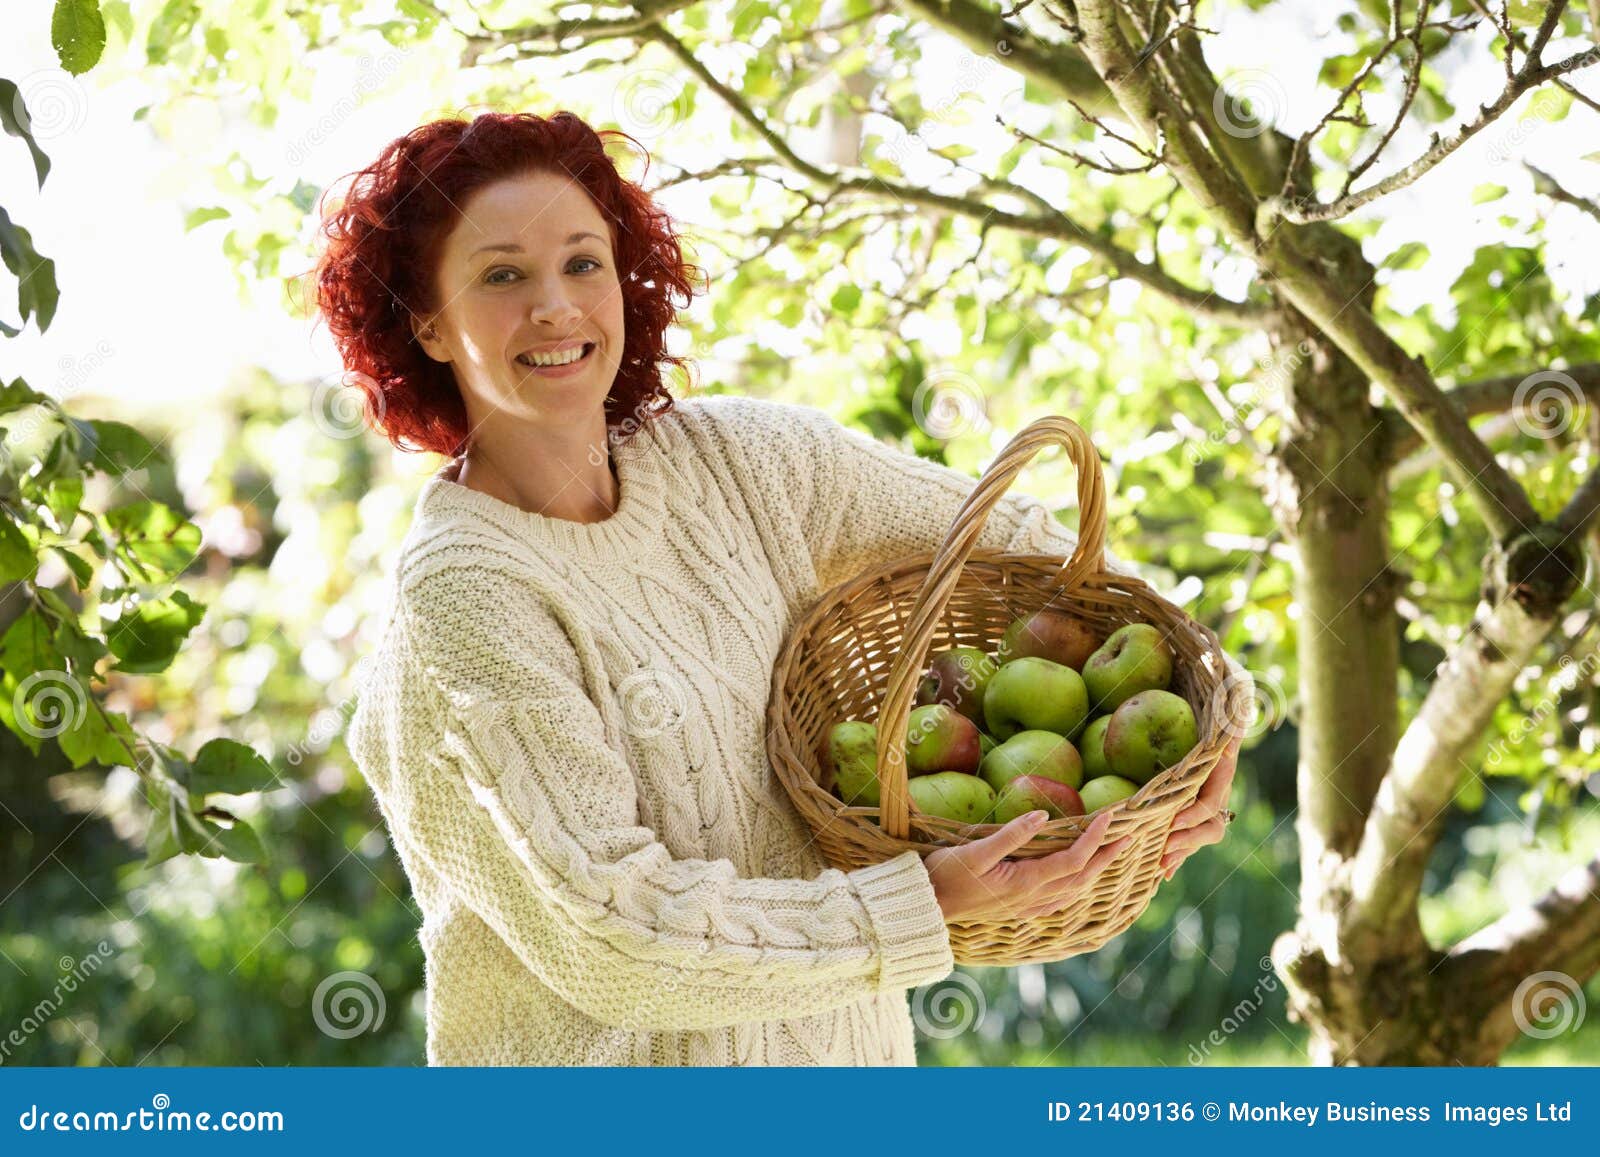 Флера яблоки. Фотосессия с яблоками. Женщина с яблоками в саду. Девушка с корзиной яблок. Женщина в яблоневом саду.